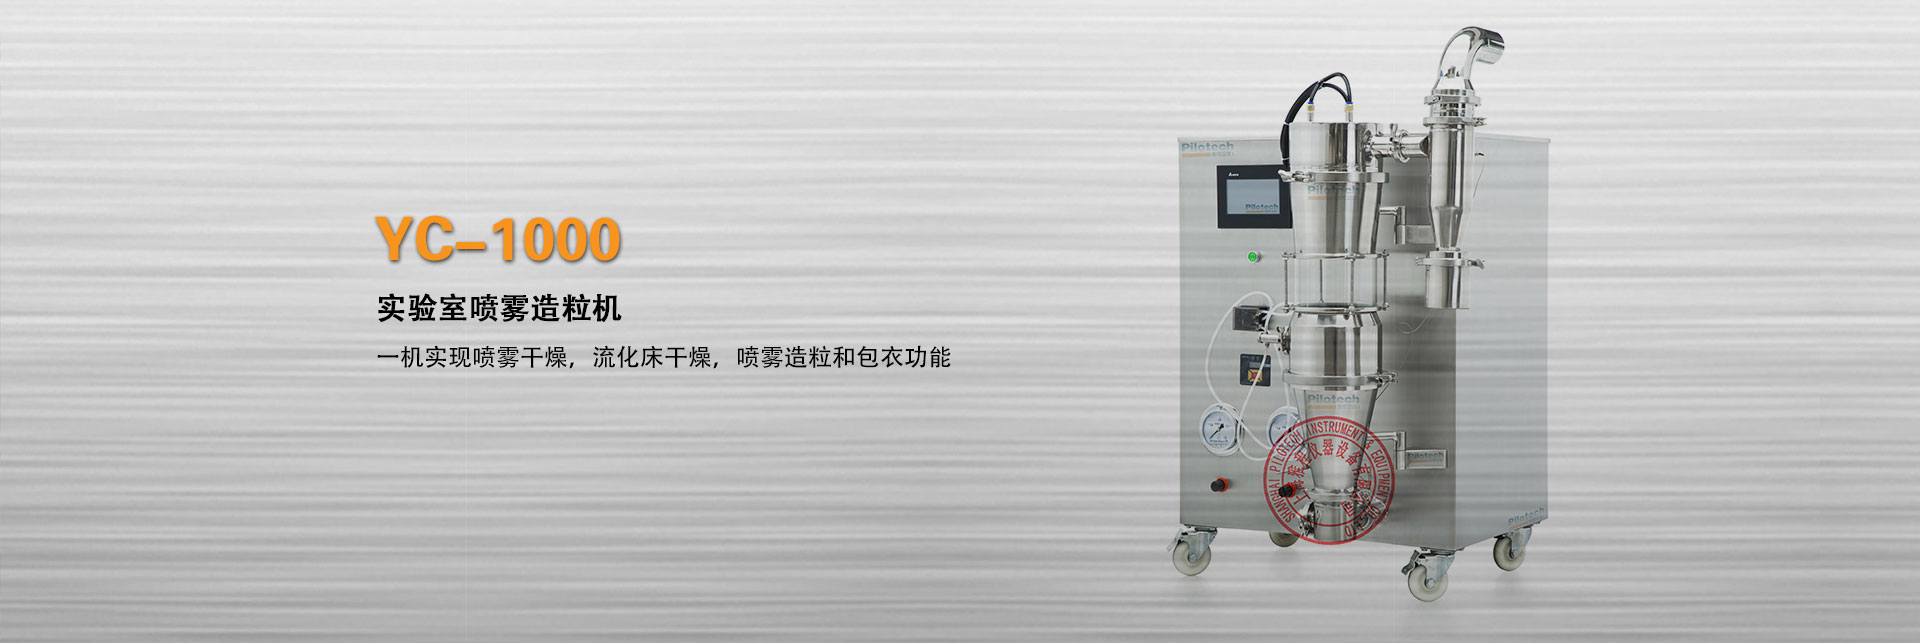 上海球盟会实验室喷雾造粒机